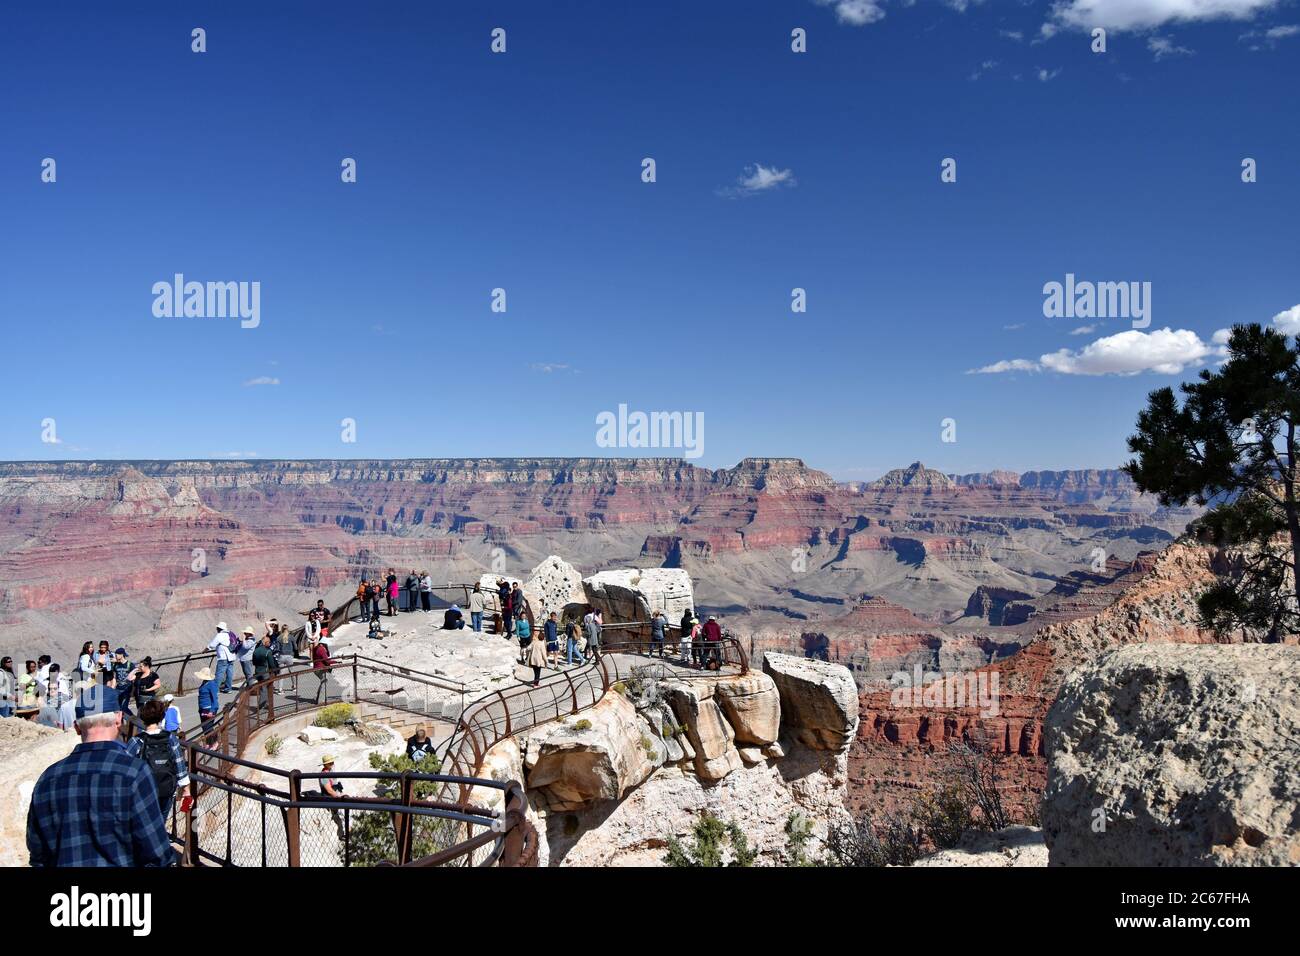 Mather Point sul bordo sud del Grand Canyon. I visitatori si vedono godendo il panorama, posando e scattando foto del canyon intorno a loro. Foto Stock